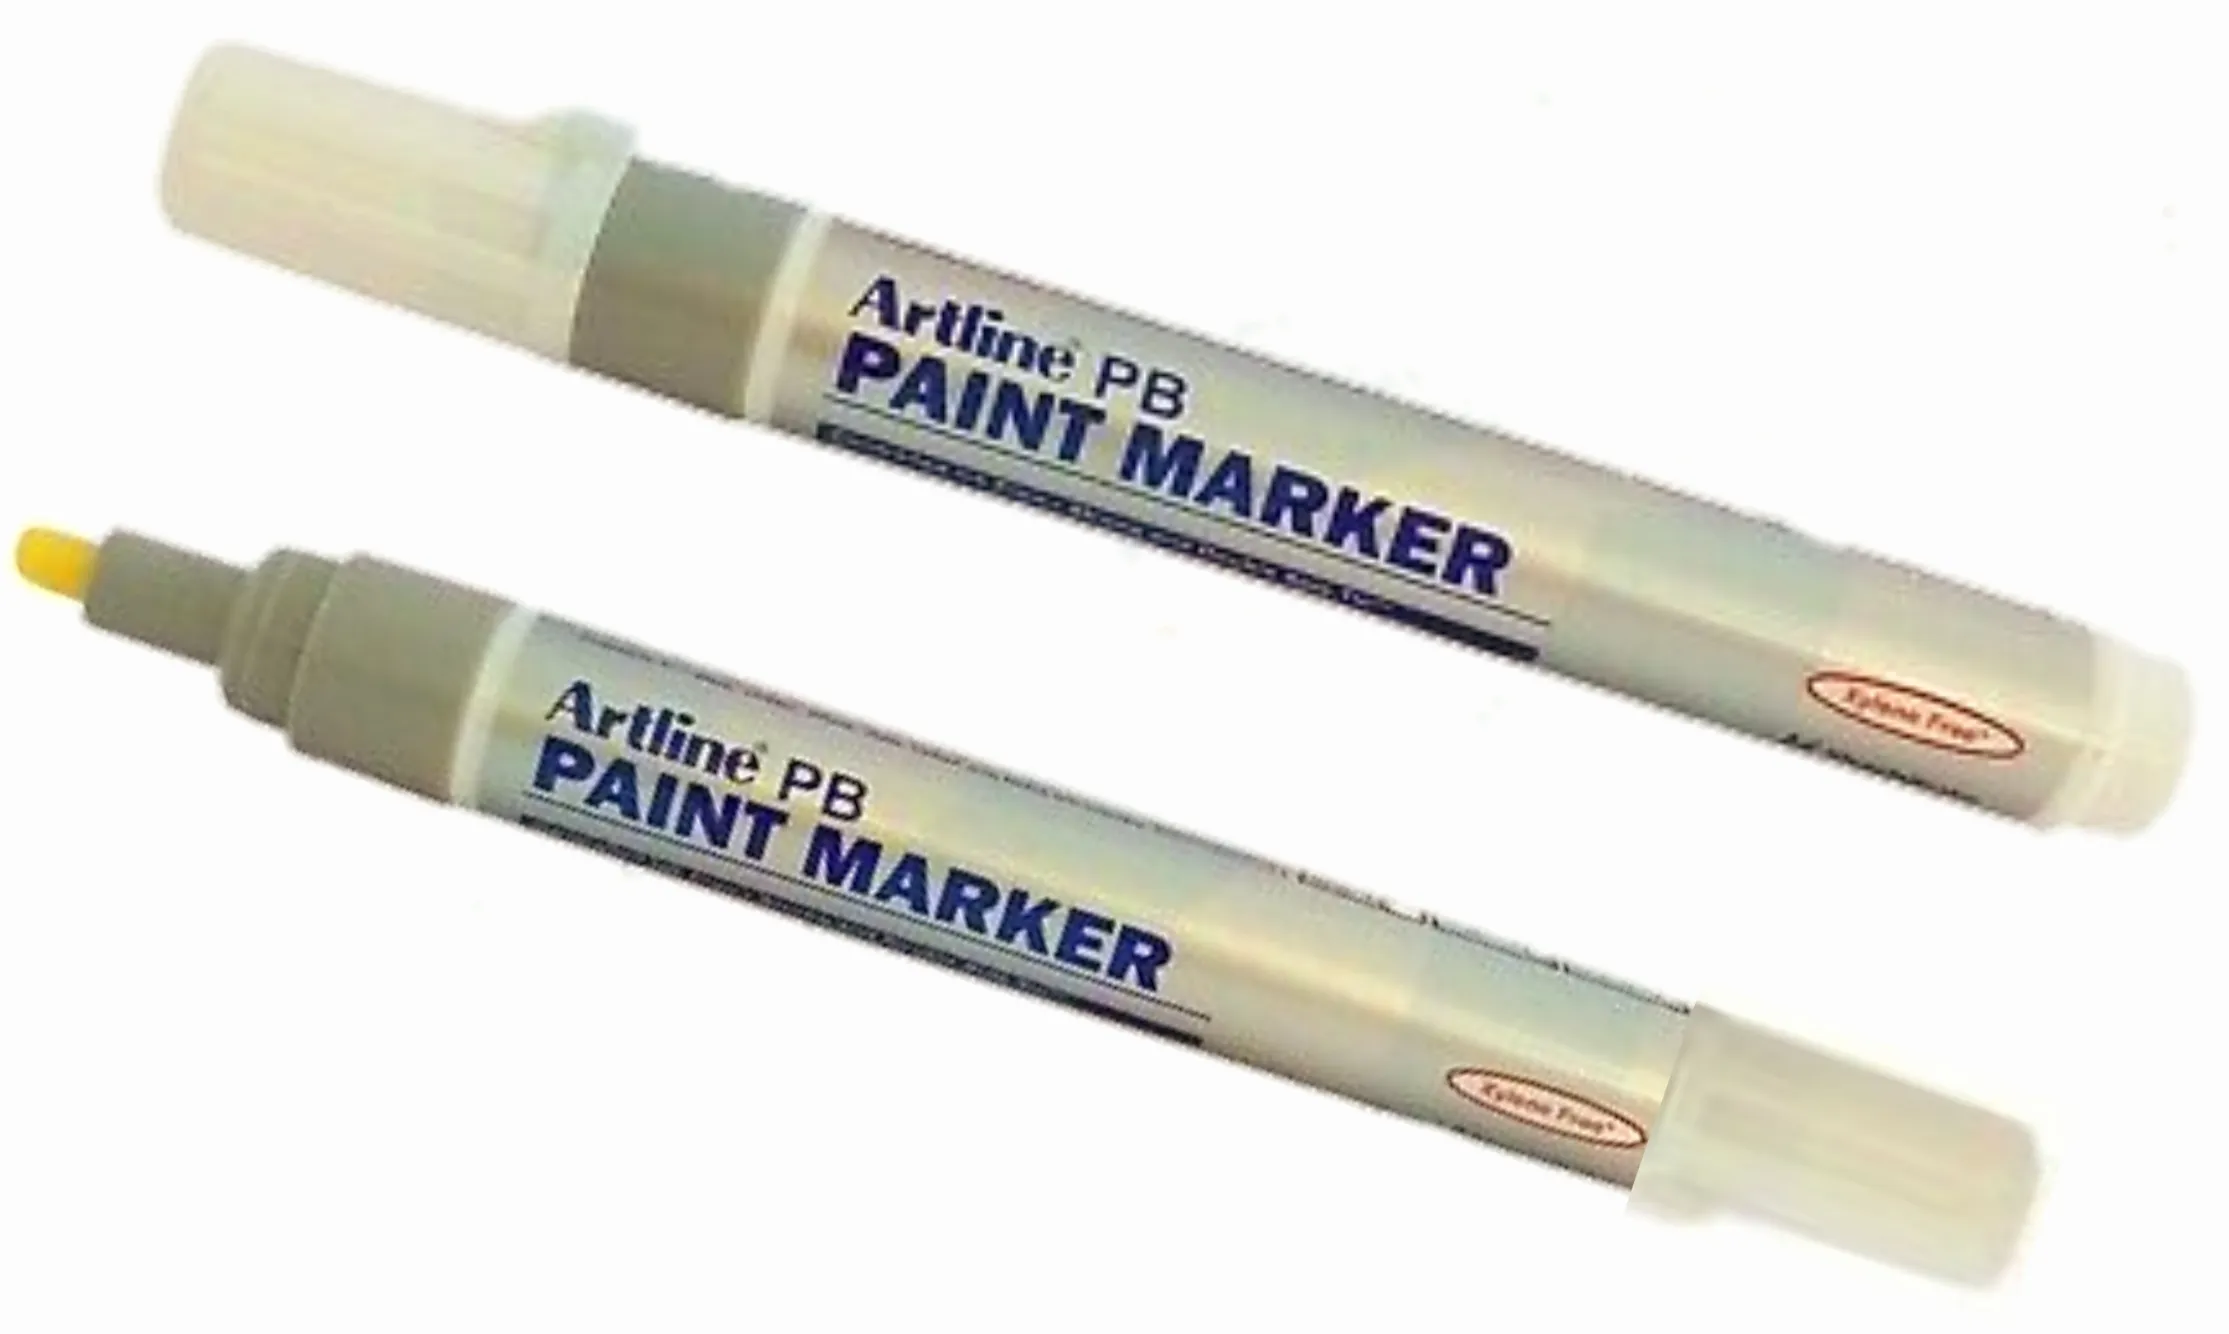 Artline PB Paint Marker White 2.3 mm Tip Pack of 1